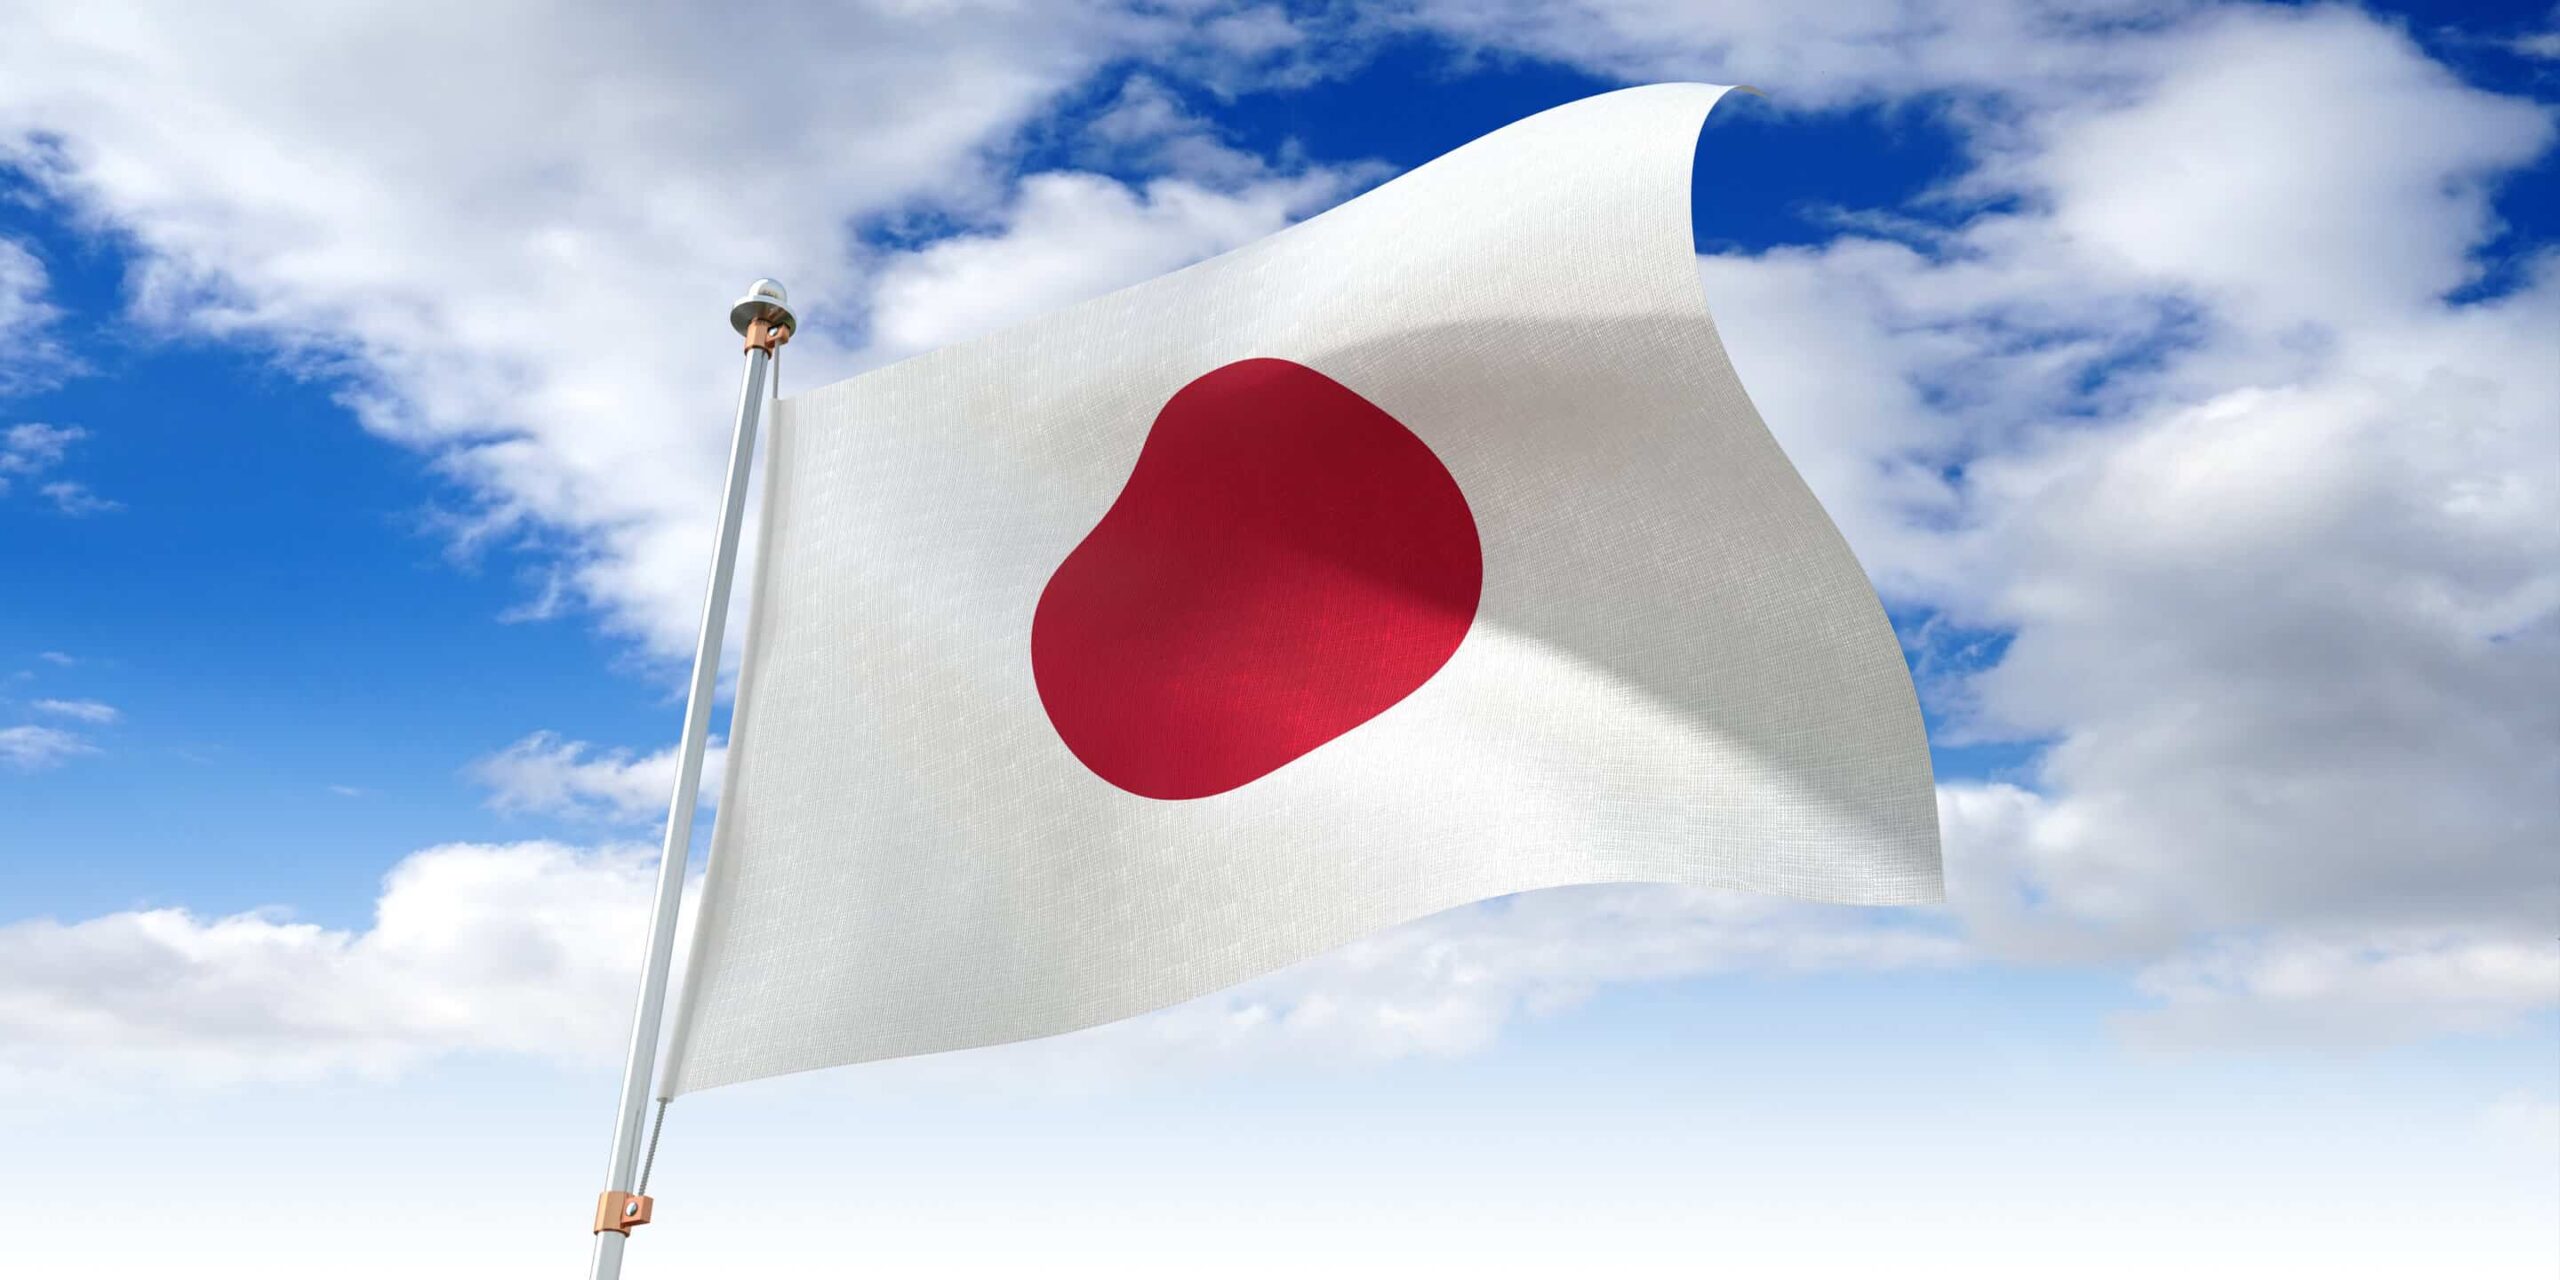 La bandiera del Giappone: storia, significato e simbolismo